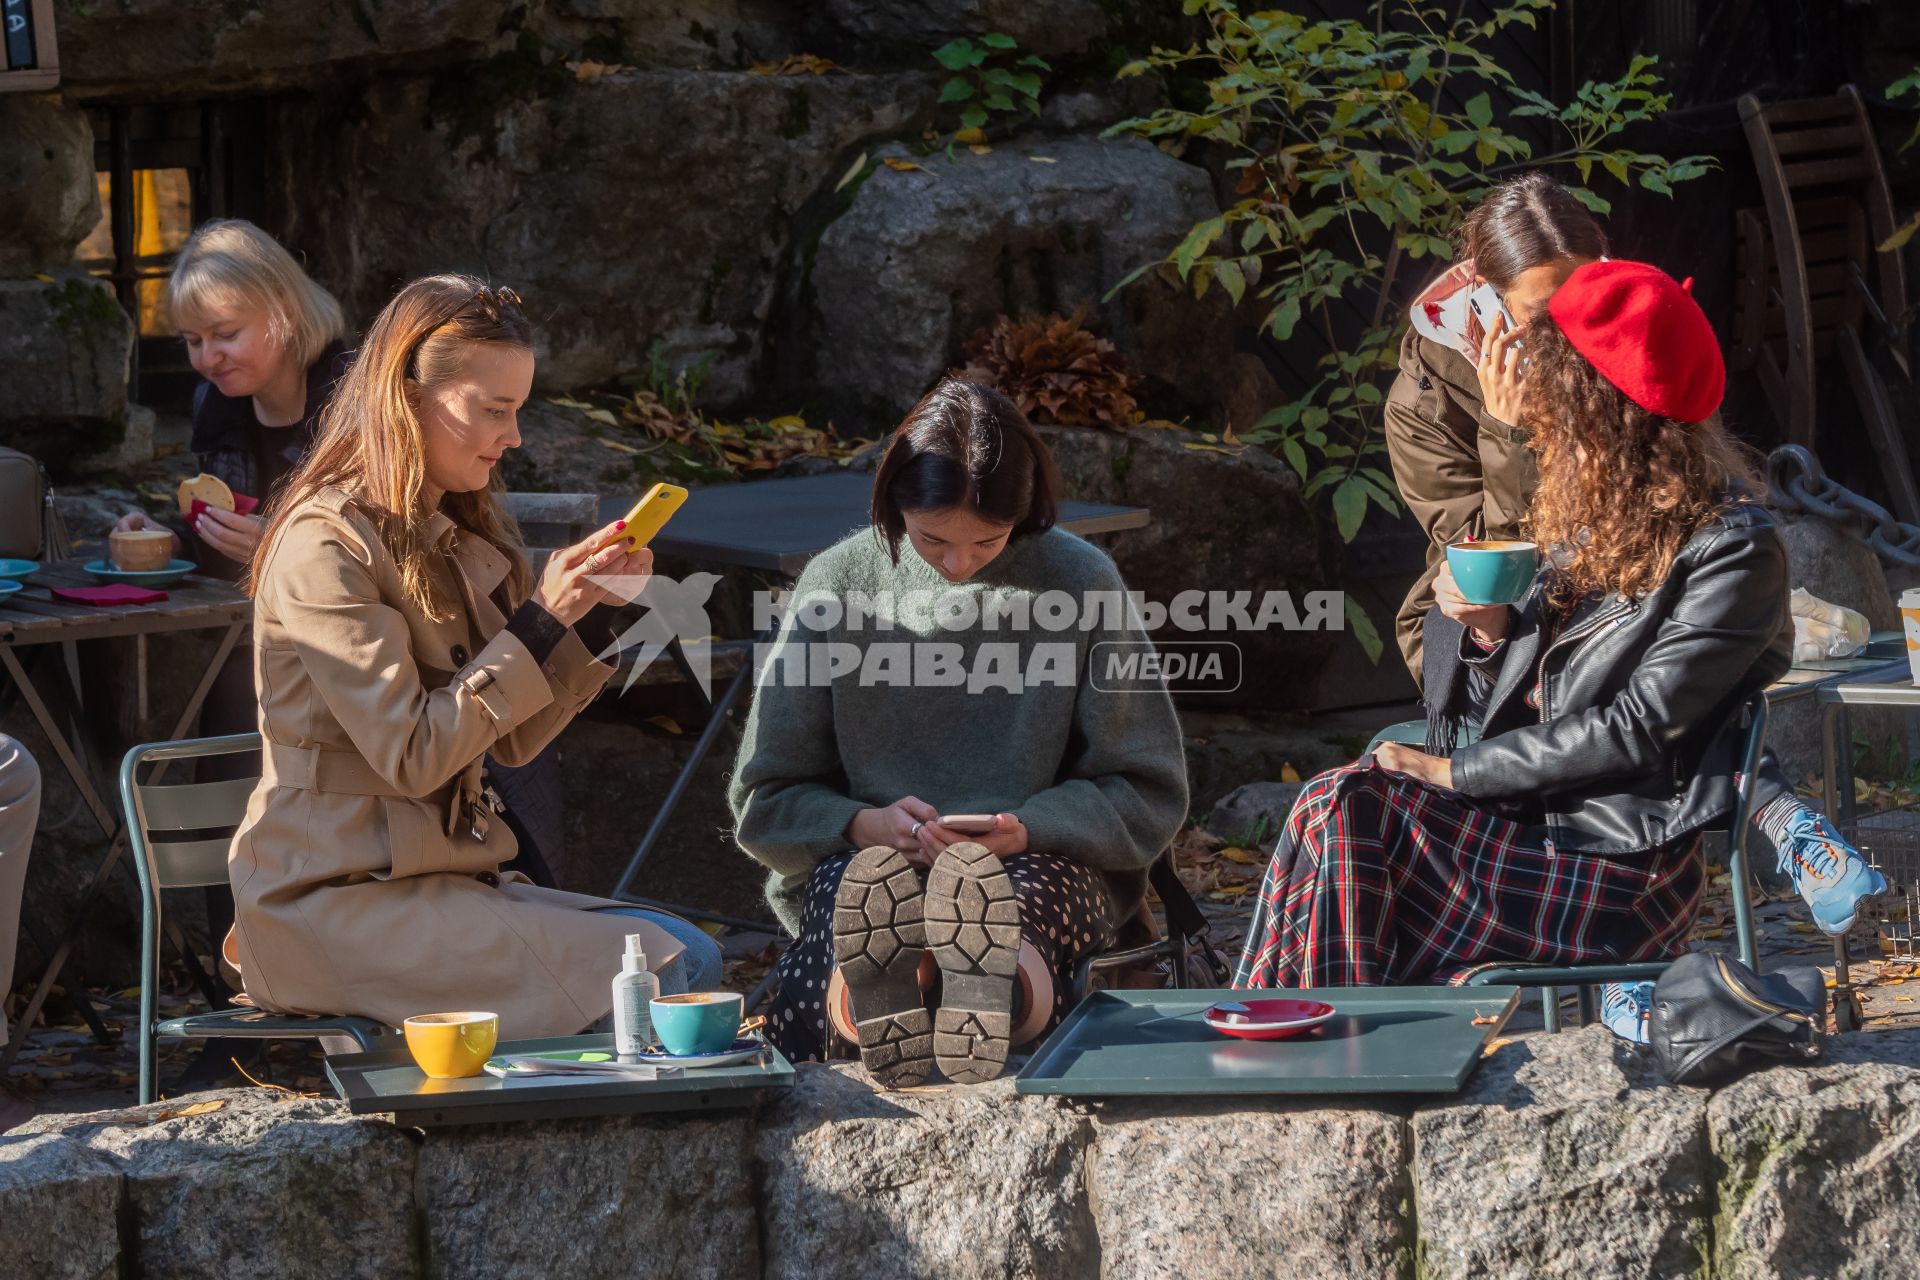 Санкт-Петербург. Девушки с мобильными телефонами сидят в кафе в Михайловском саду.